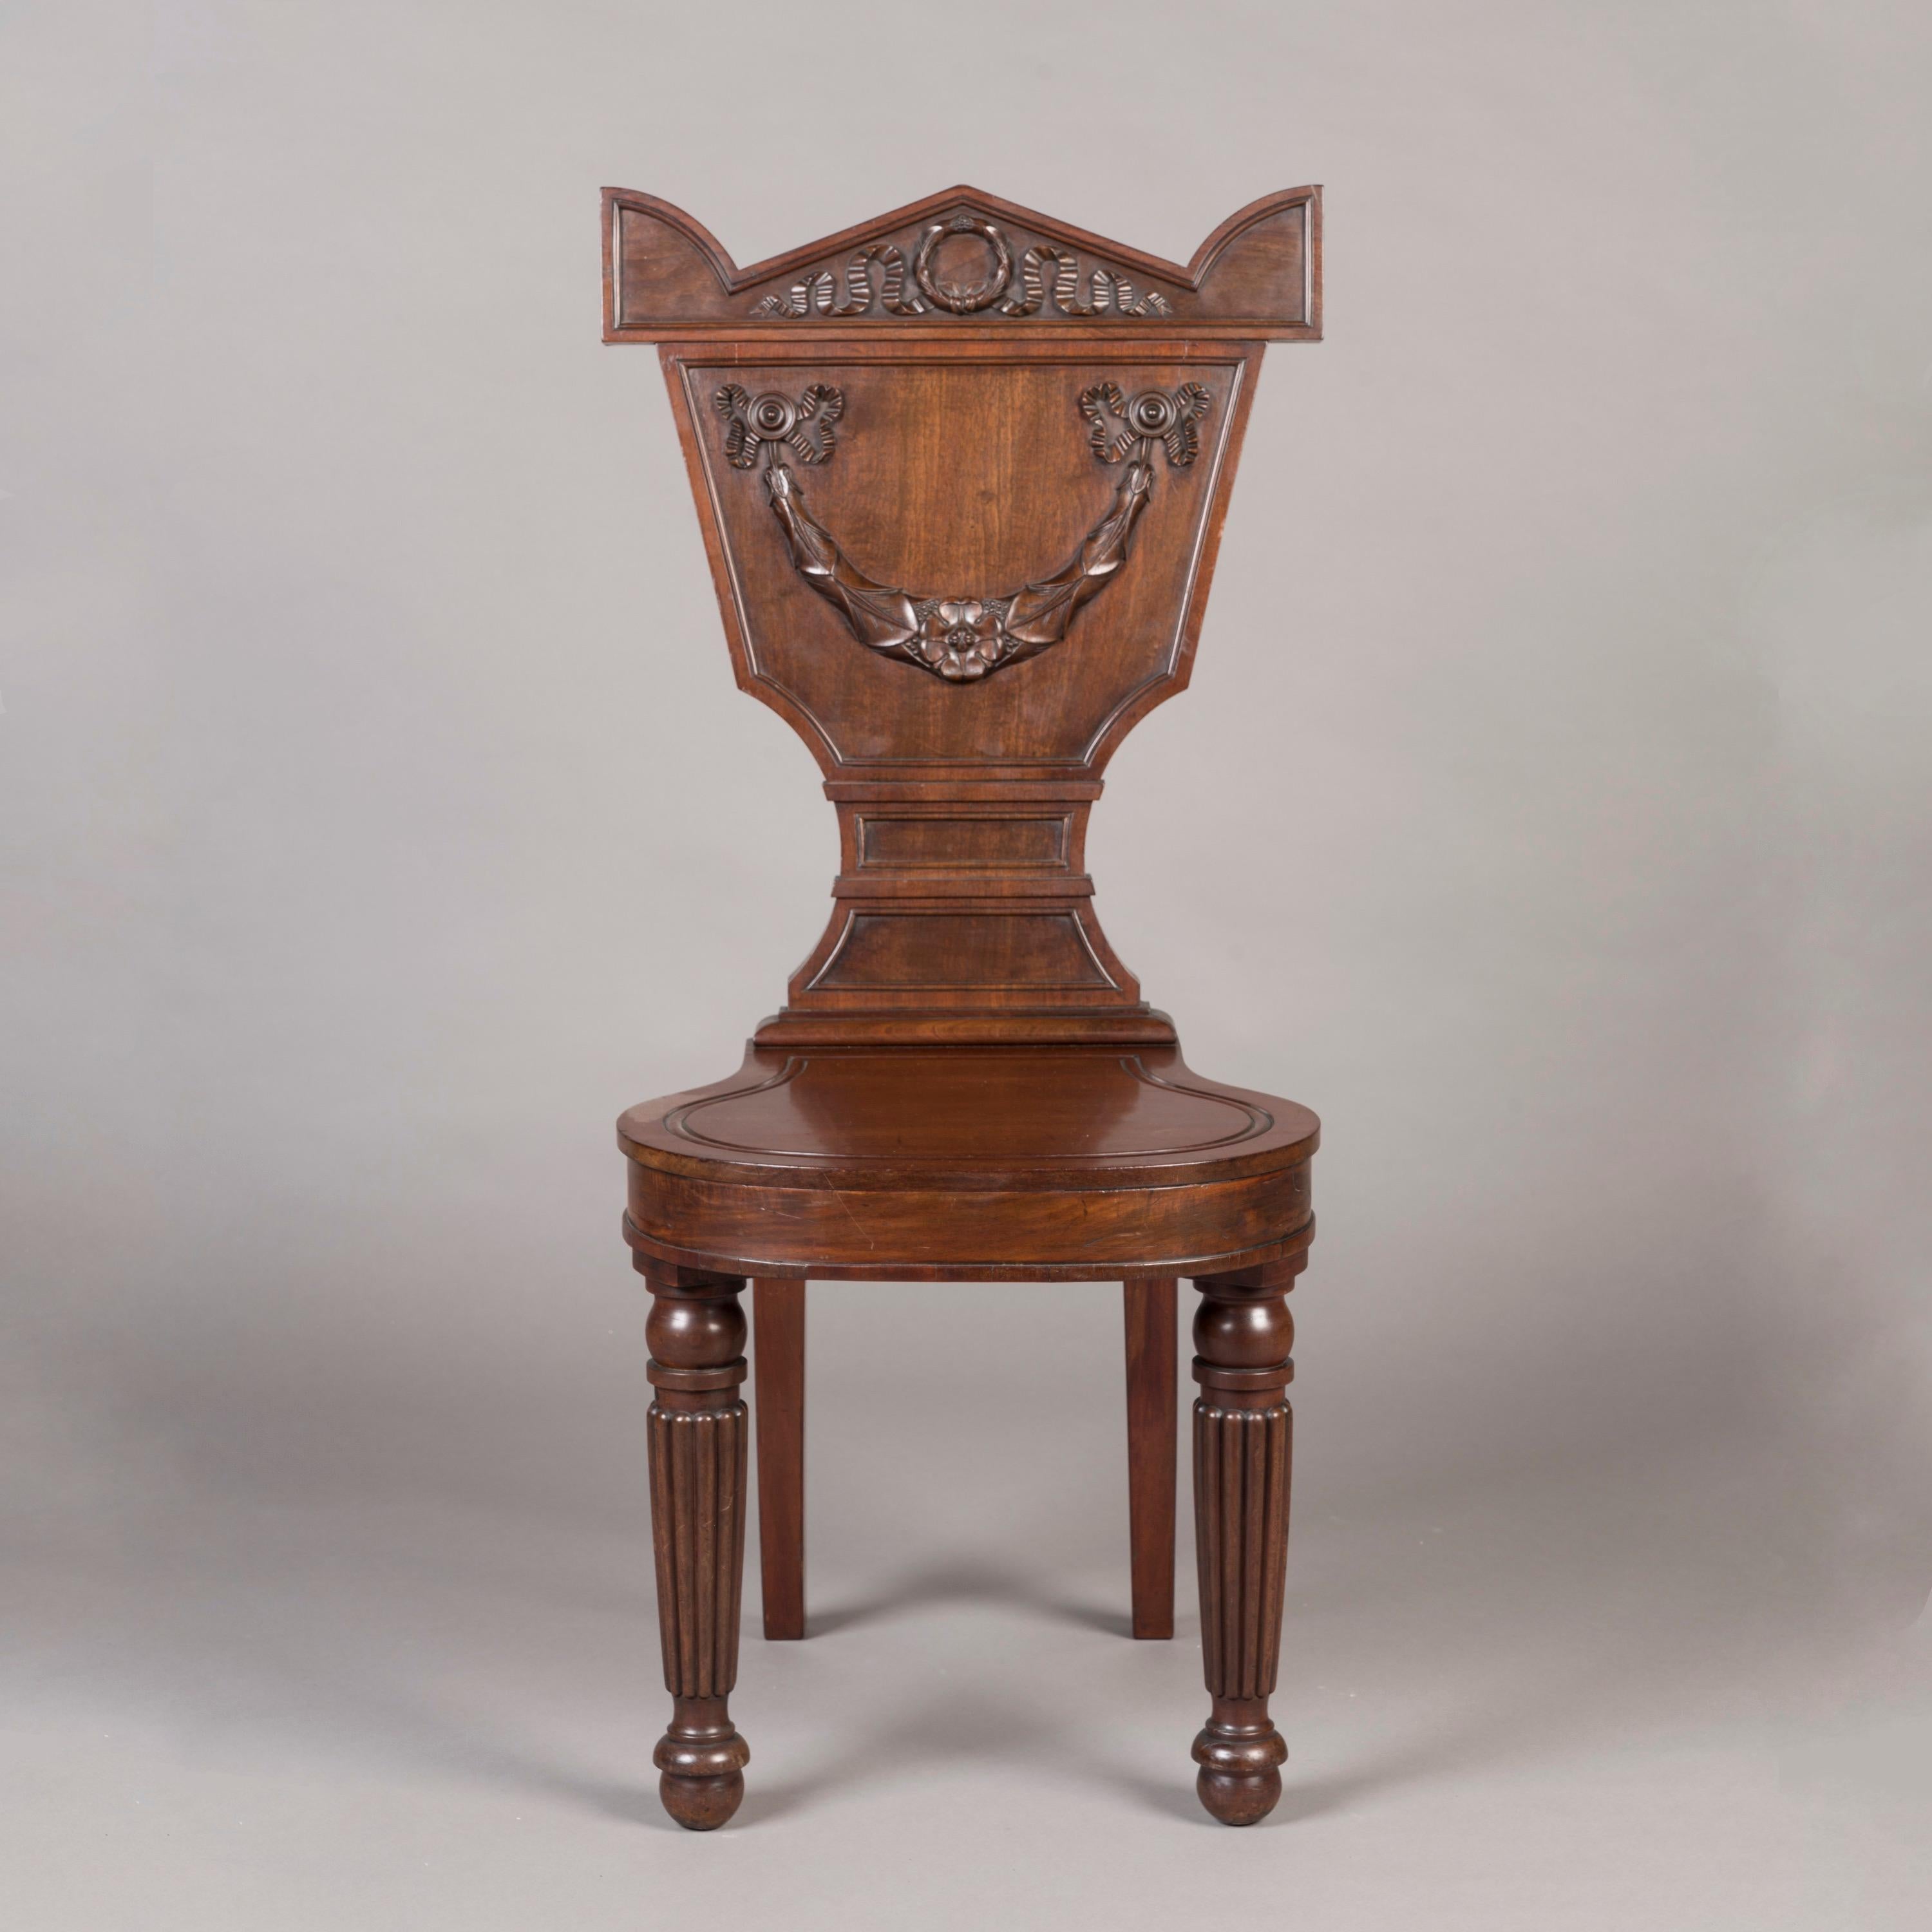 Ein Paar George IV Hall Chairs
Von William Latham Huxley

Er ist aus Mahagoni gefertigt, hat wunderschön gedrechselte und geriffelte Vorderbeine und elegante Säbelbeine auf der Rückseite. Die Rückenlehne hat eine sehr ungewöhnliche, taillierte Form